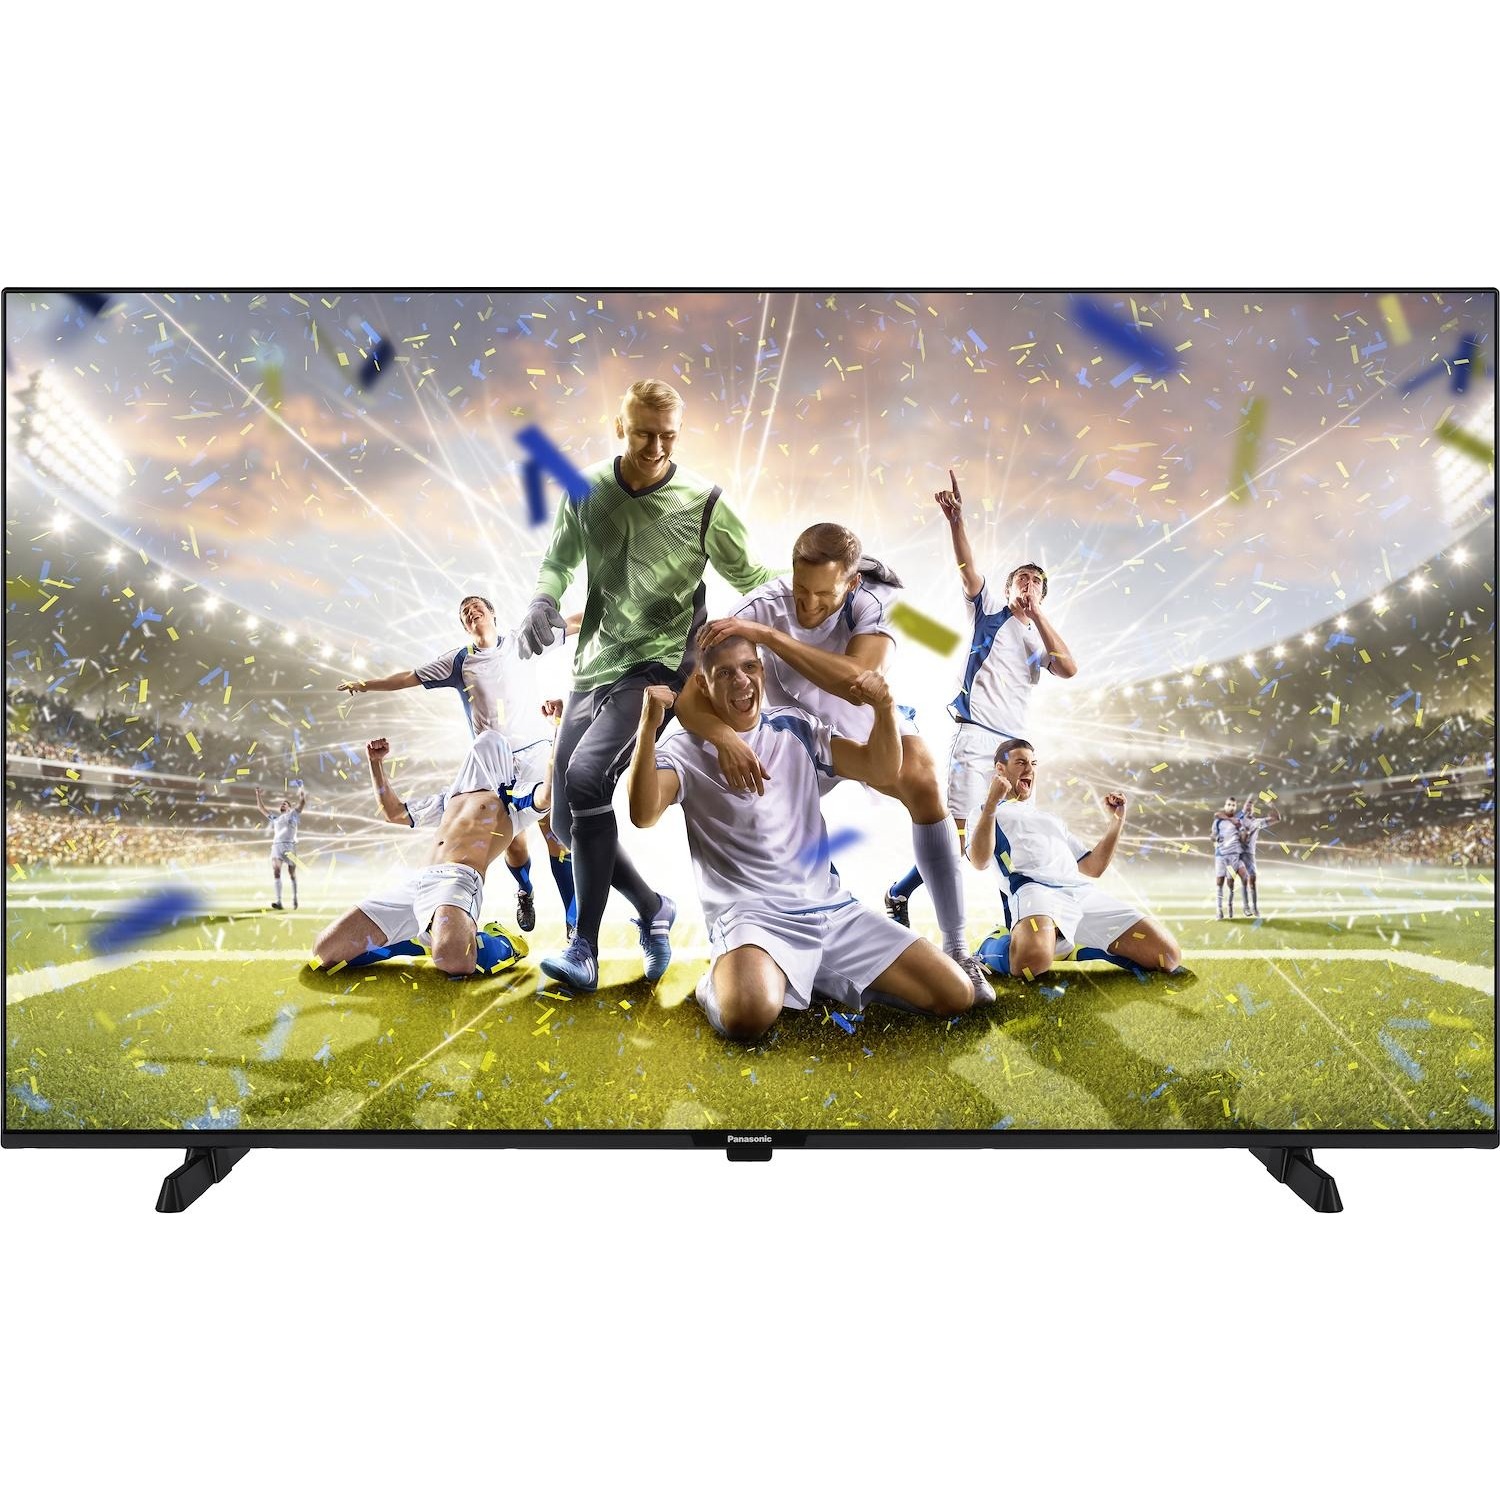 Immagine per TV LED Smart Panasonic 55MX600E calibrato 4K e UHD da DIMOStore